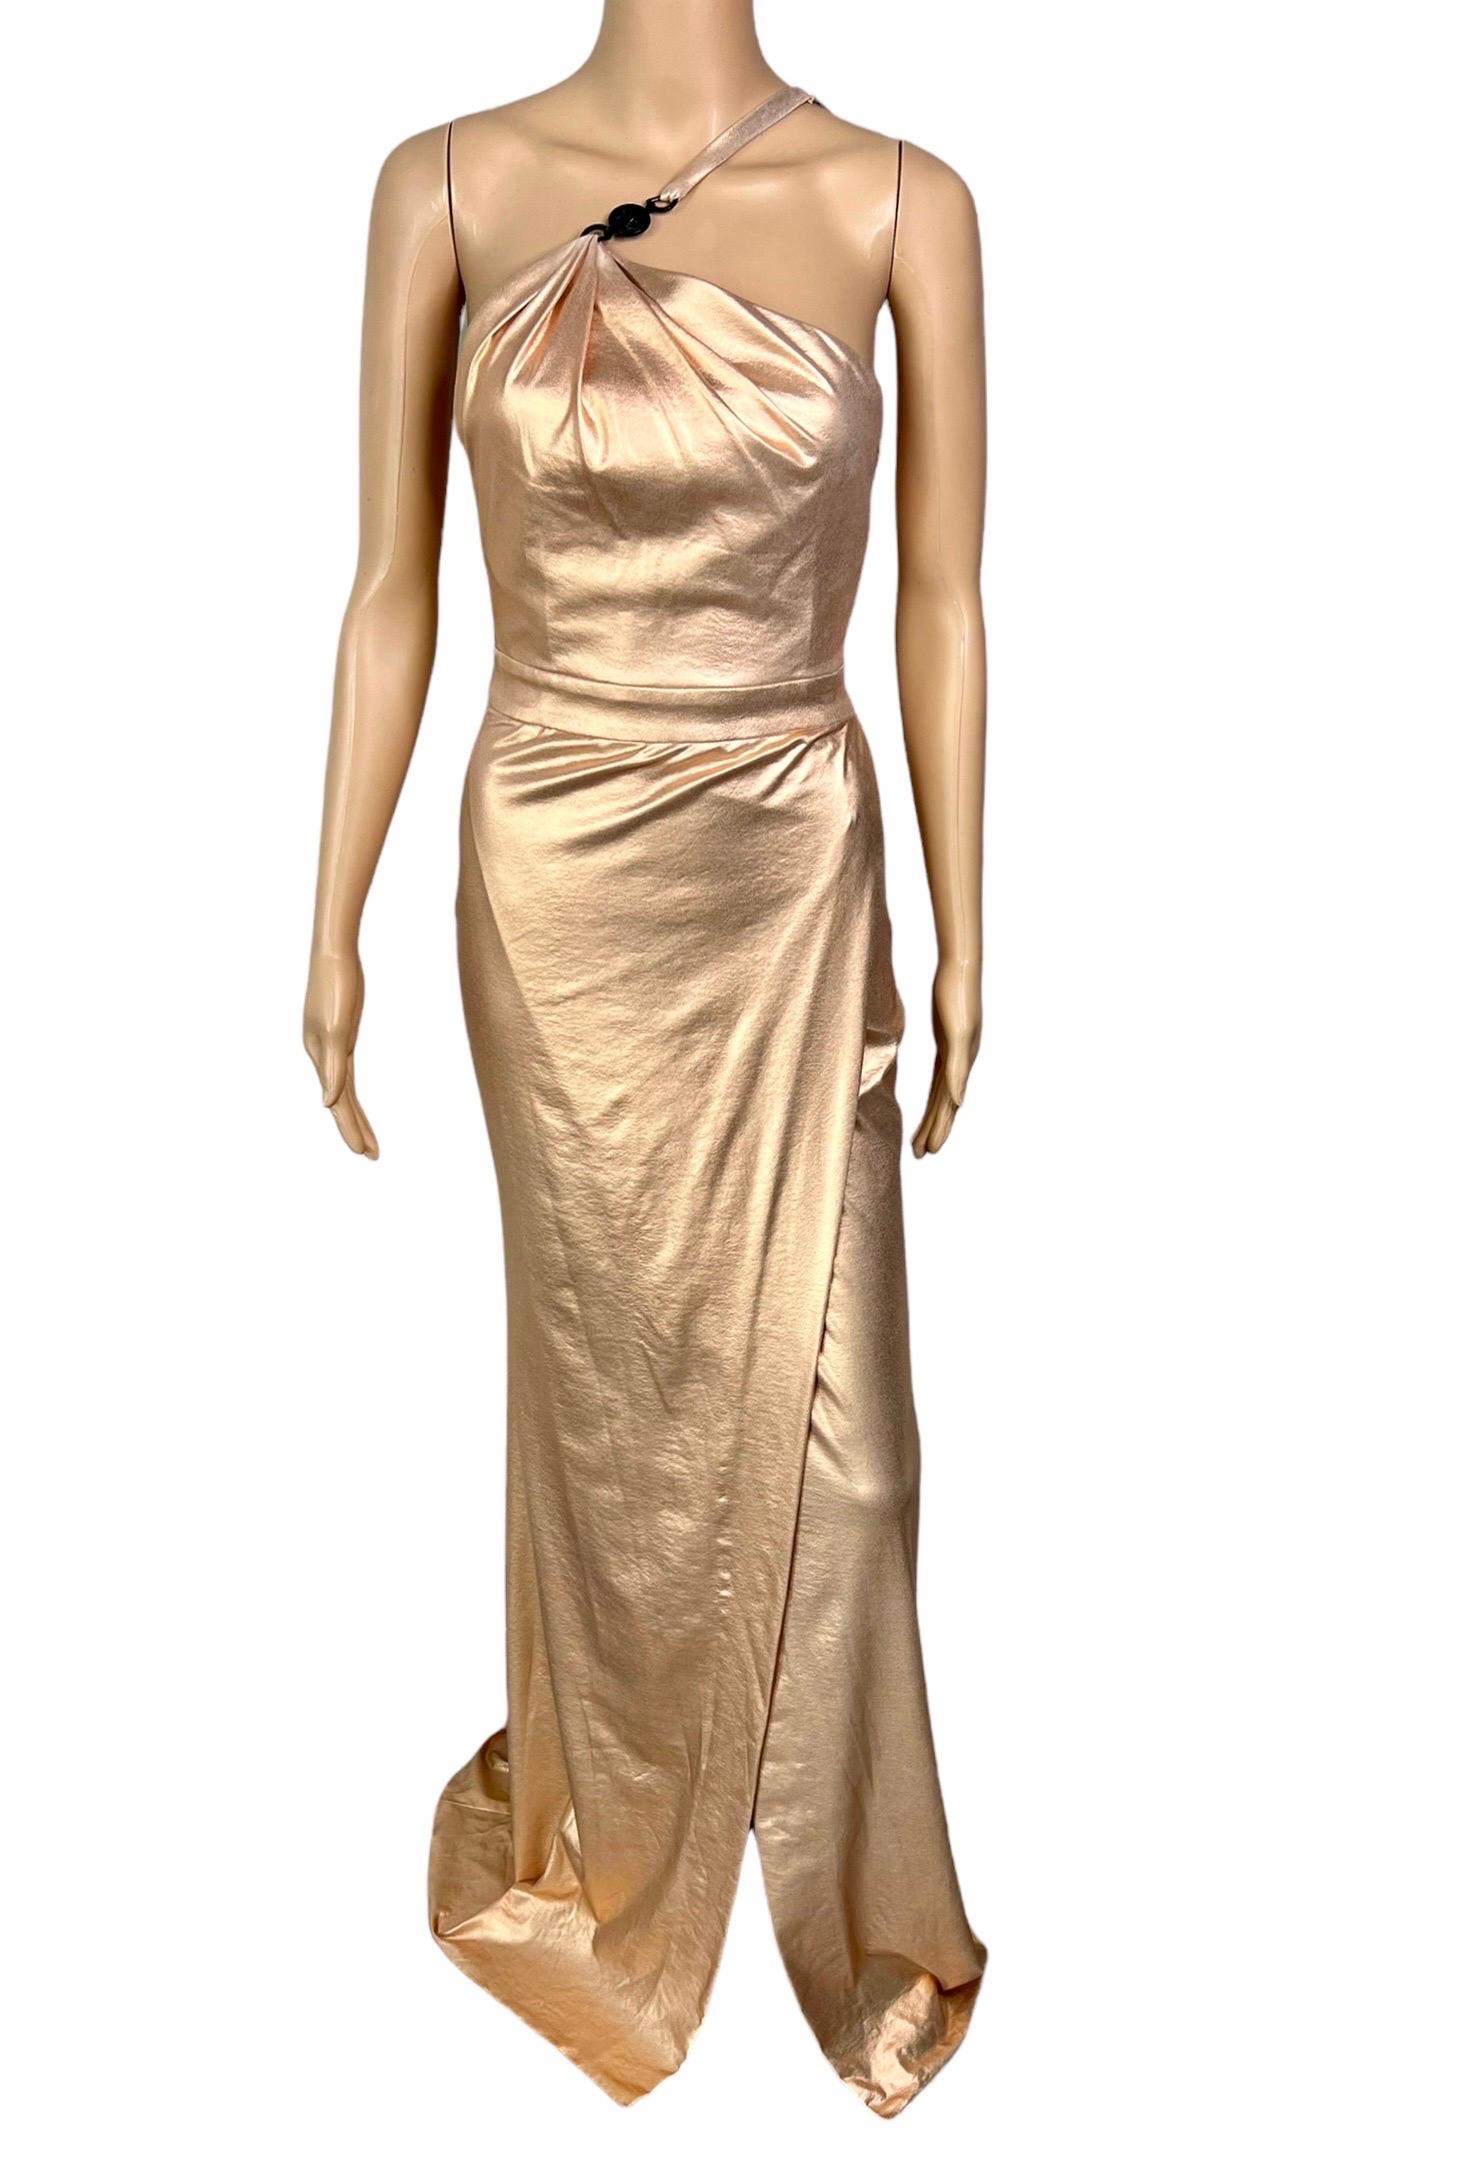 Versace c.2013 Wet Liquid Look Bodycon Metallic Rose Gold Evening Dress Gown 3